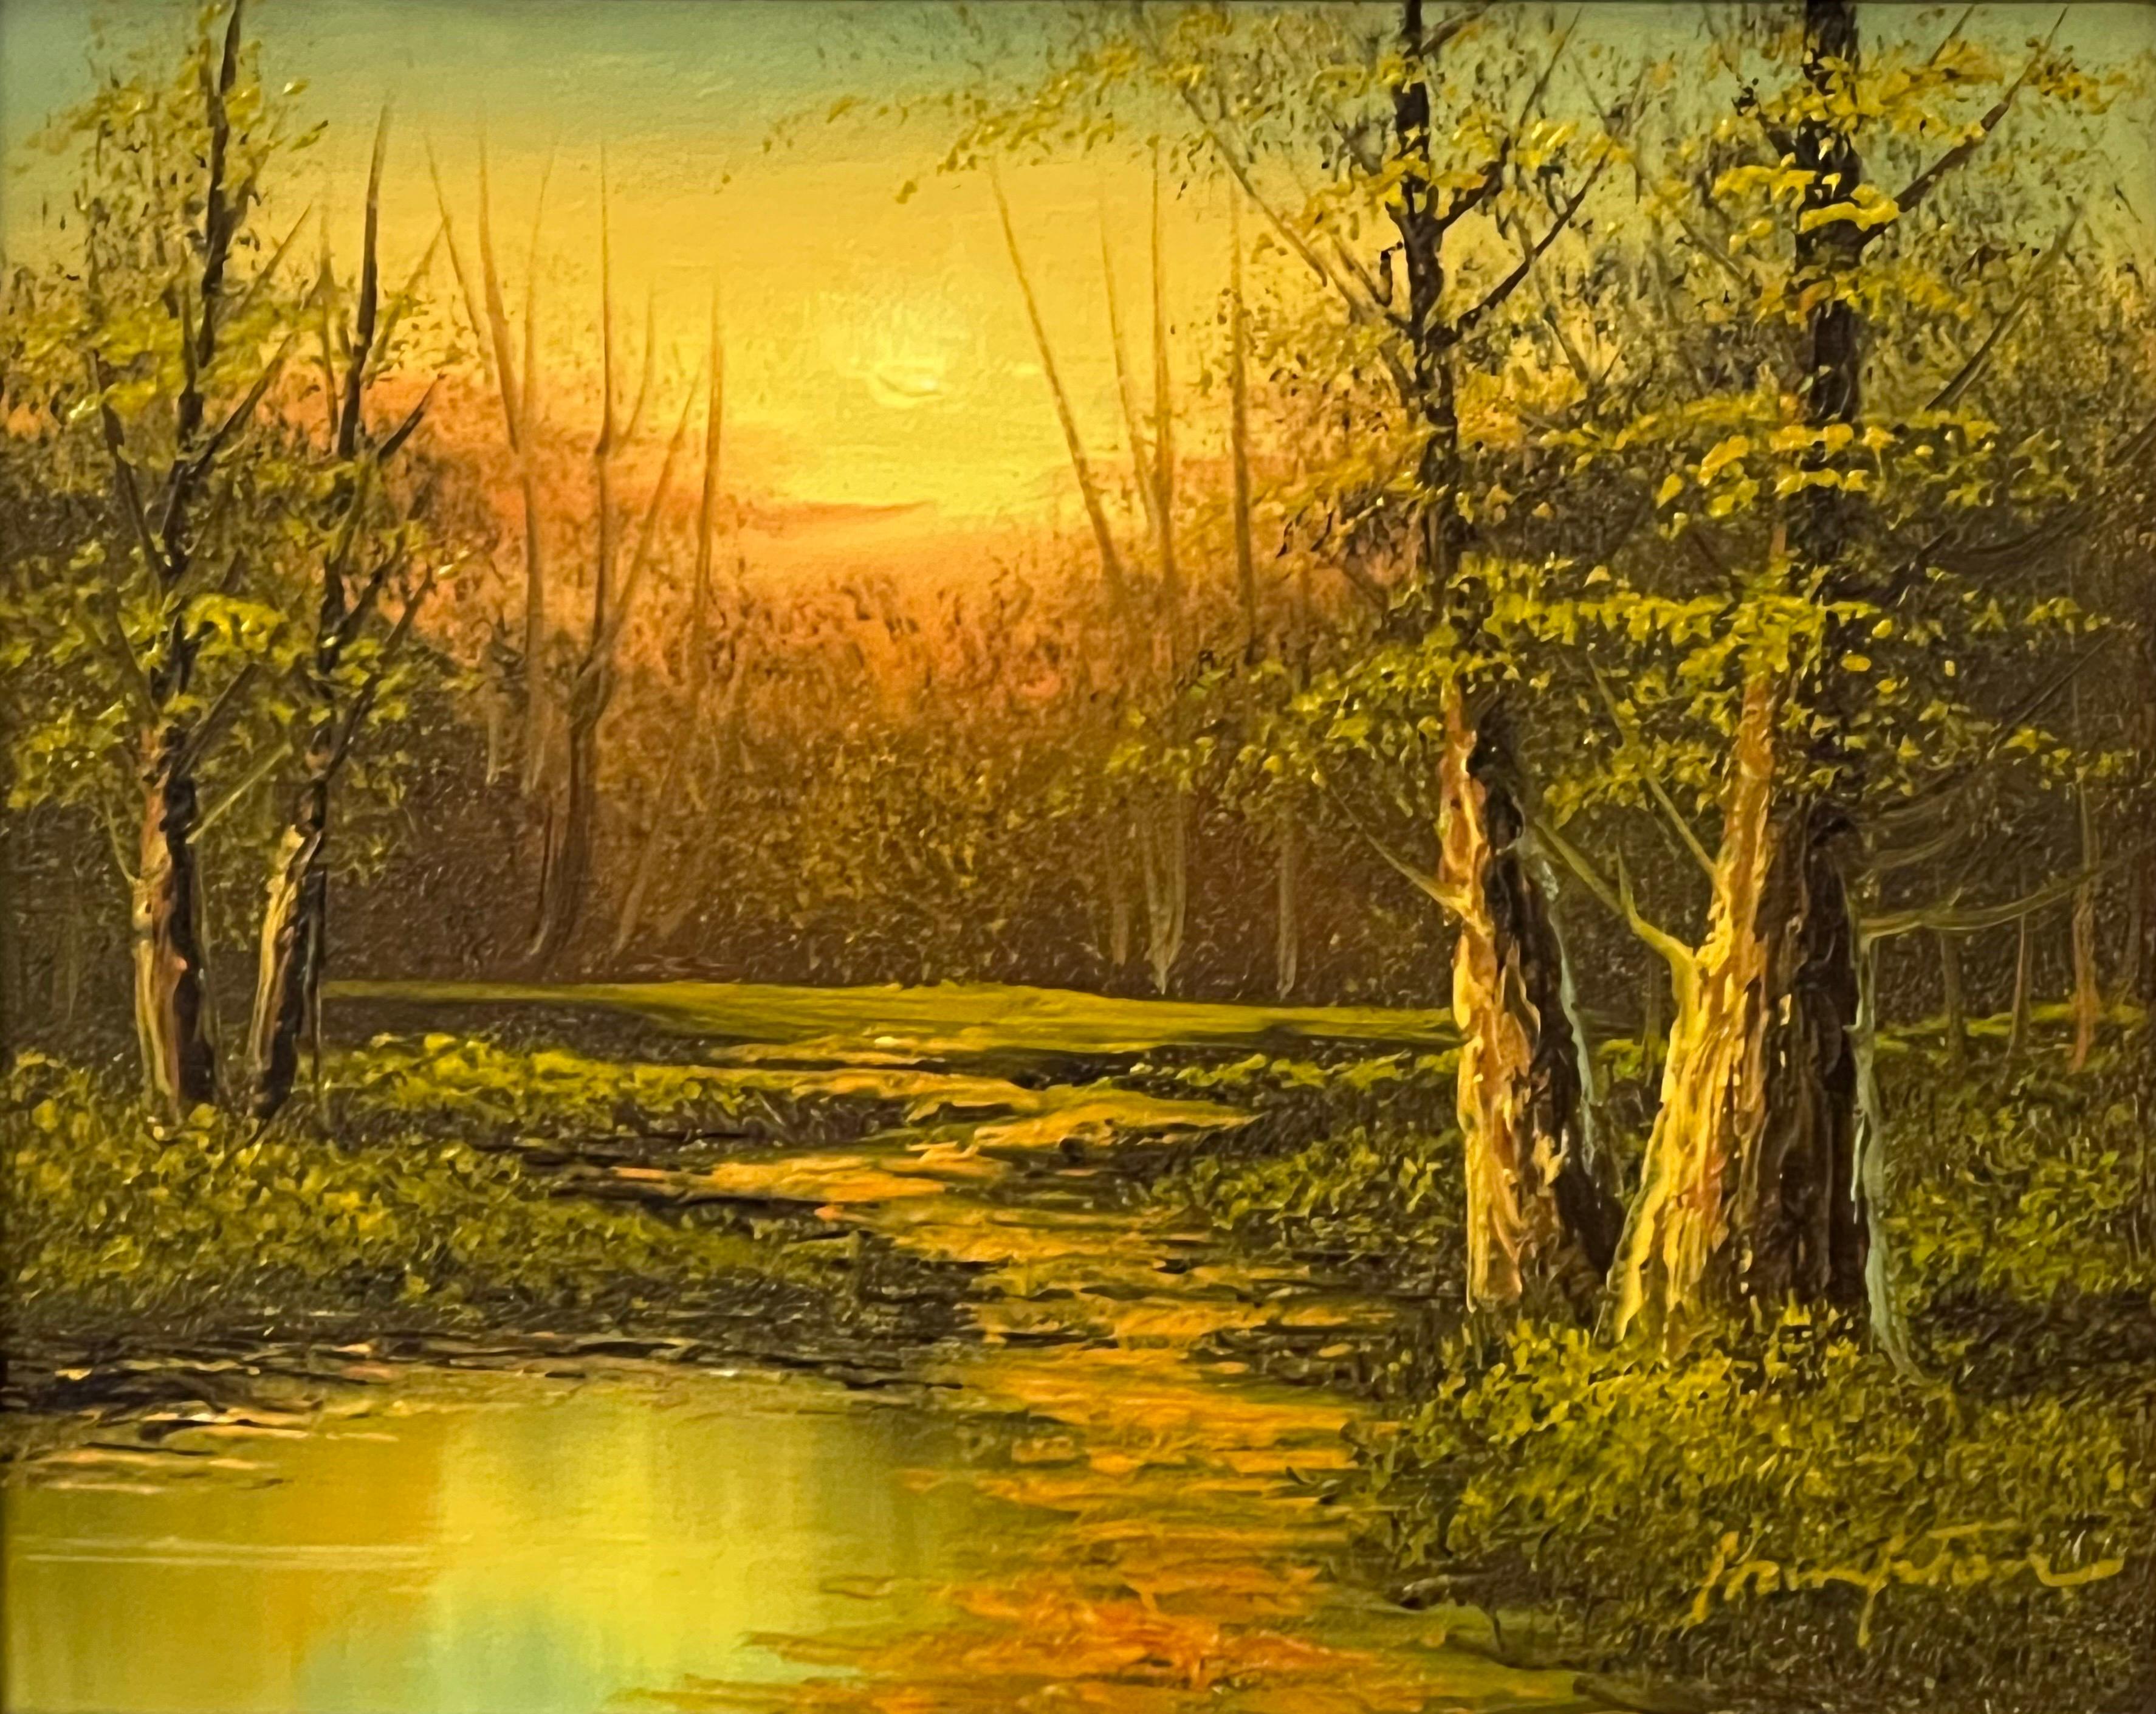 Vintage Ölgemälde von River Sunset in den Wäldern der englischen Landschaft – Painting von Hampton